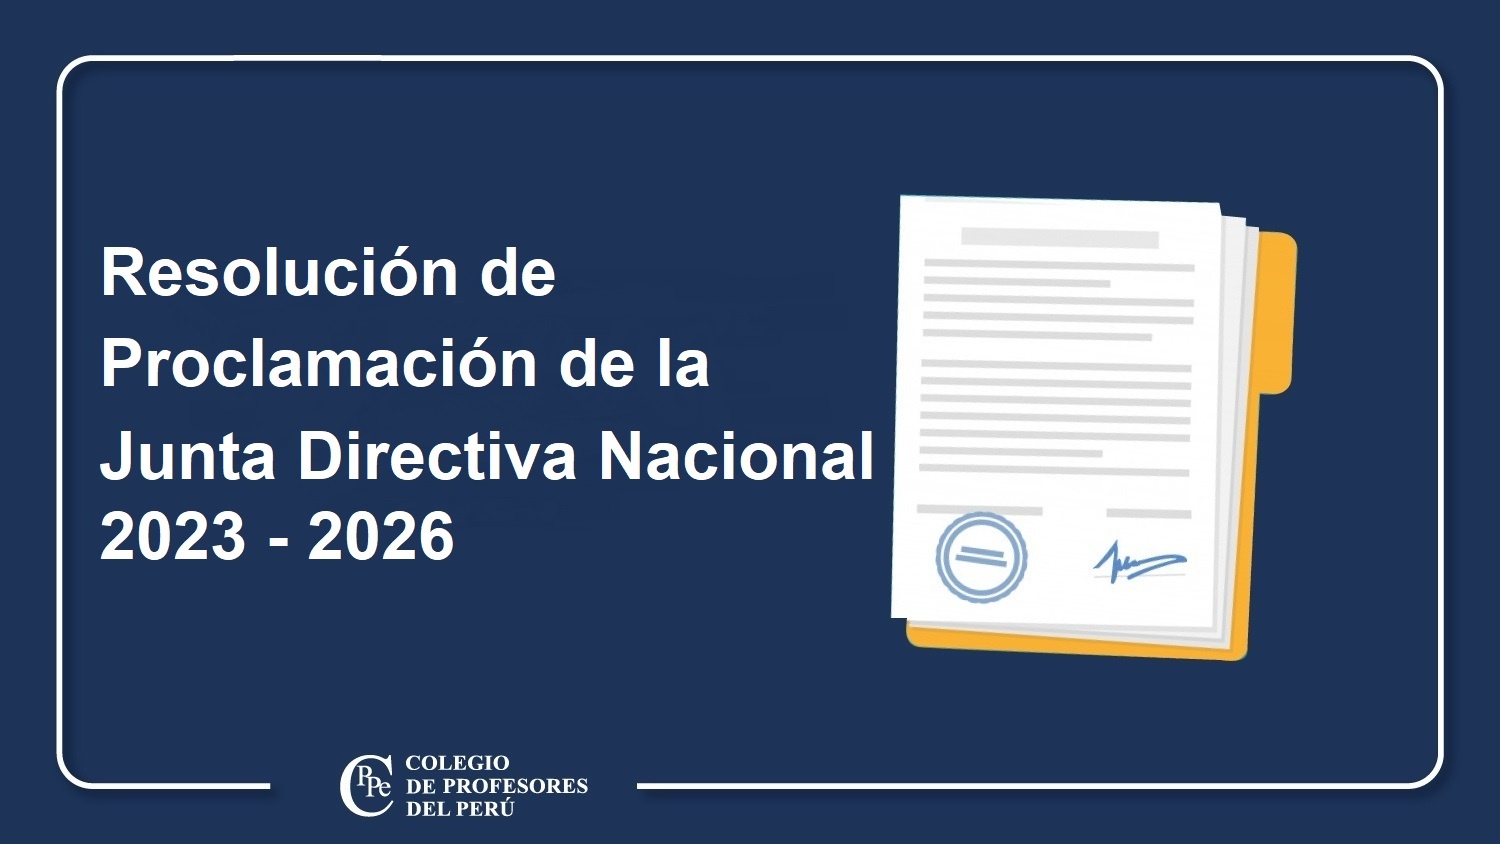 PROCLAMACIÓN DE LA JUNTA DIRECTIVA NACIONAL, PERIODO 2023 - 2026